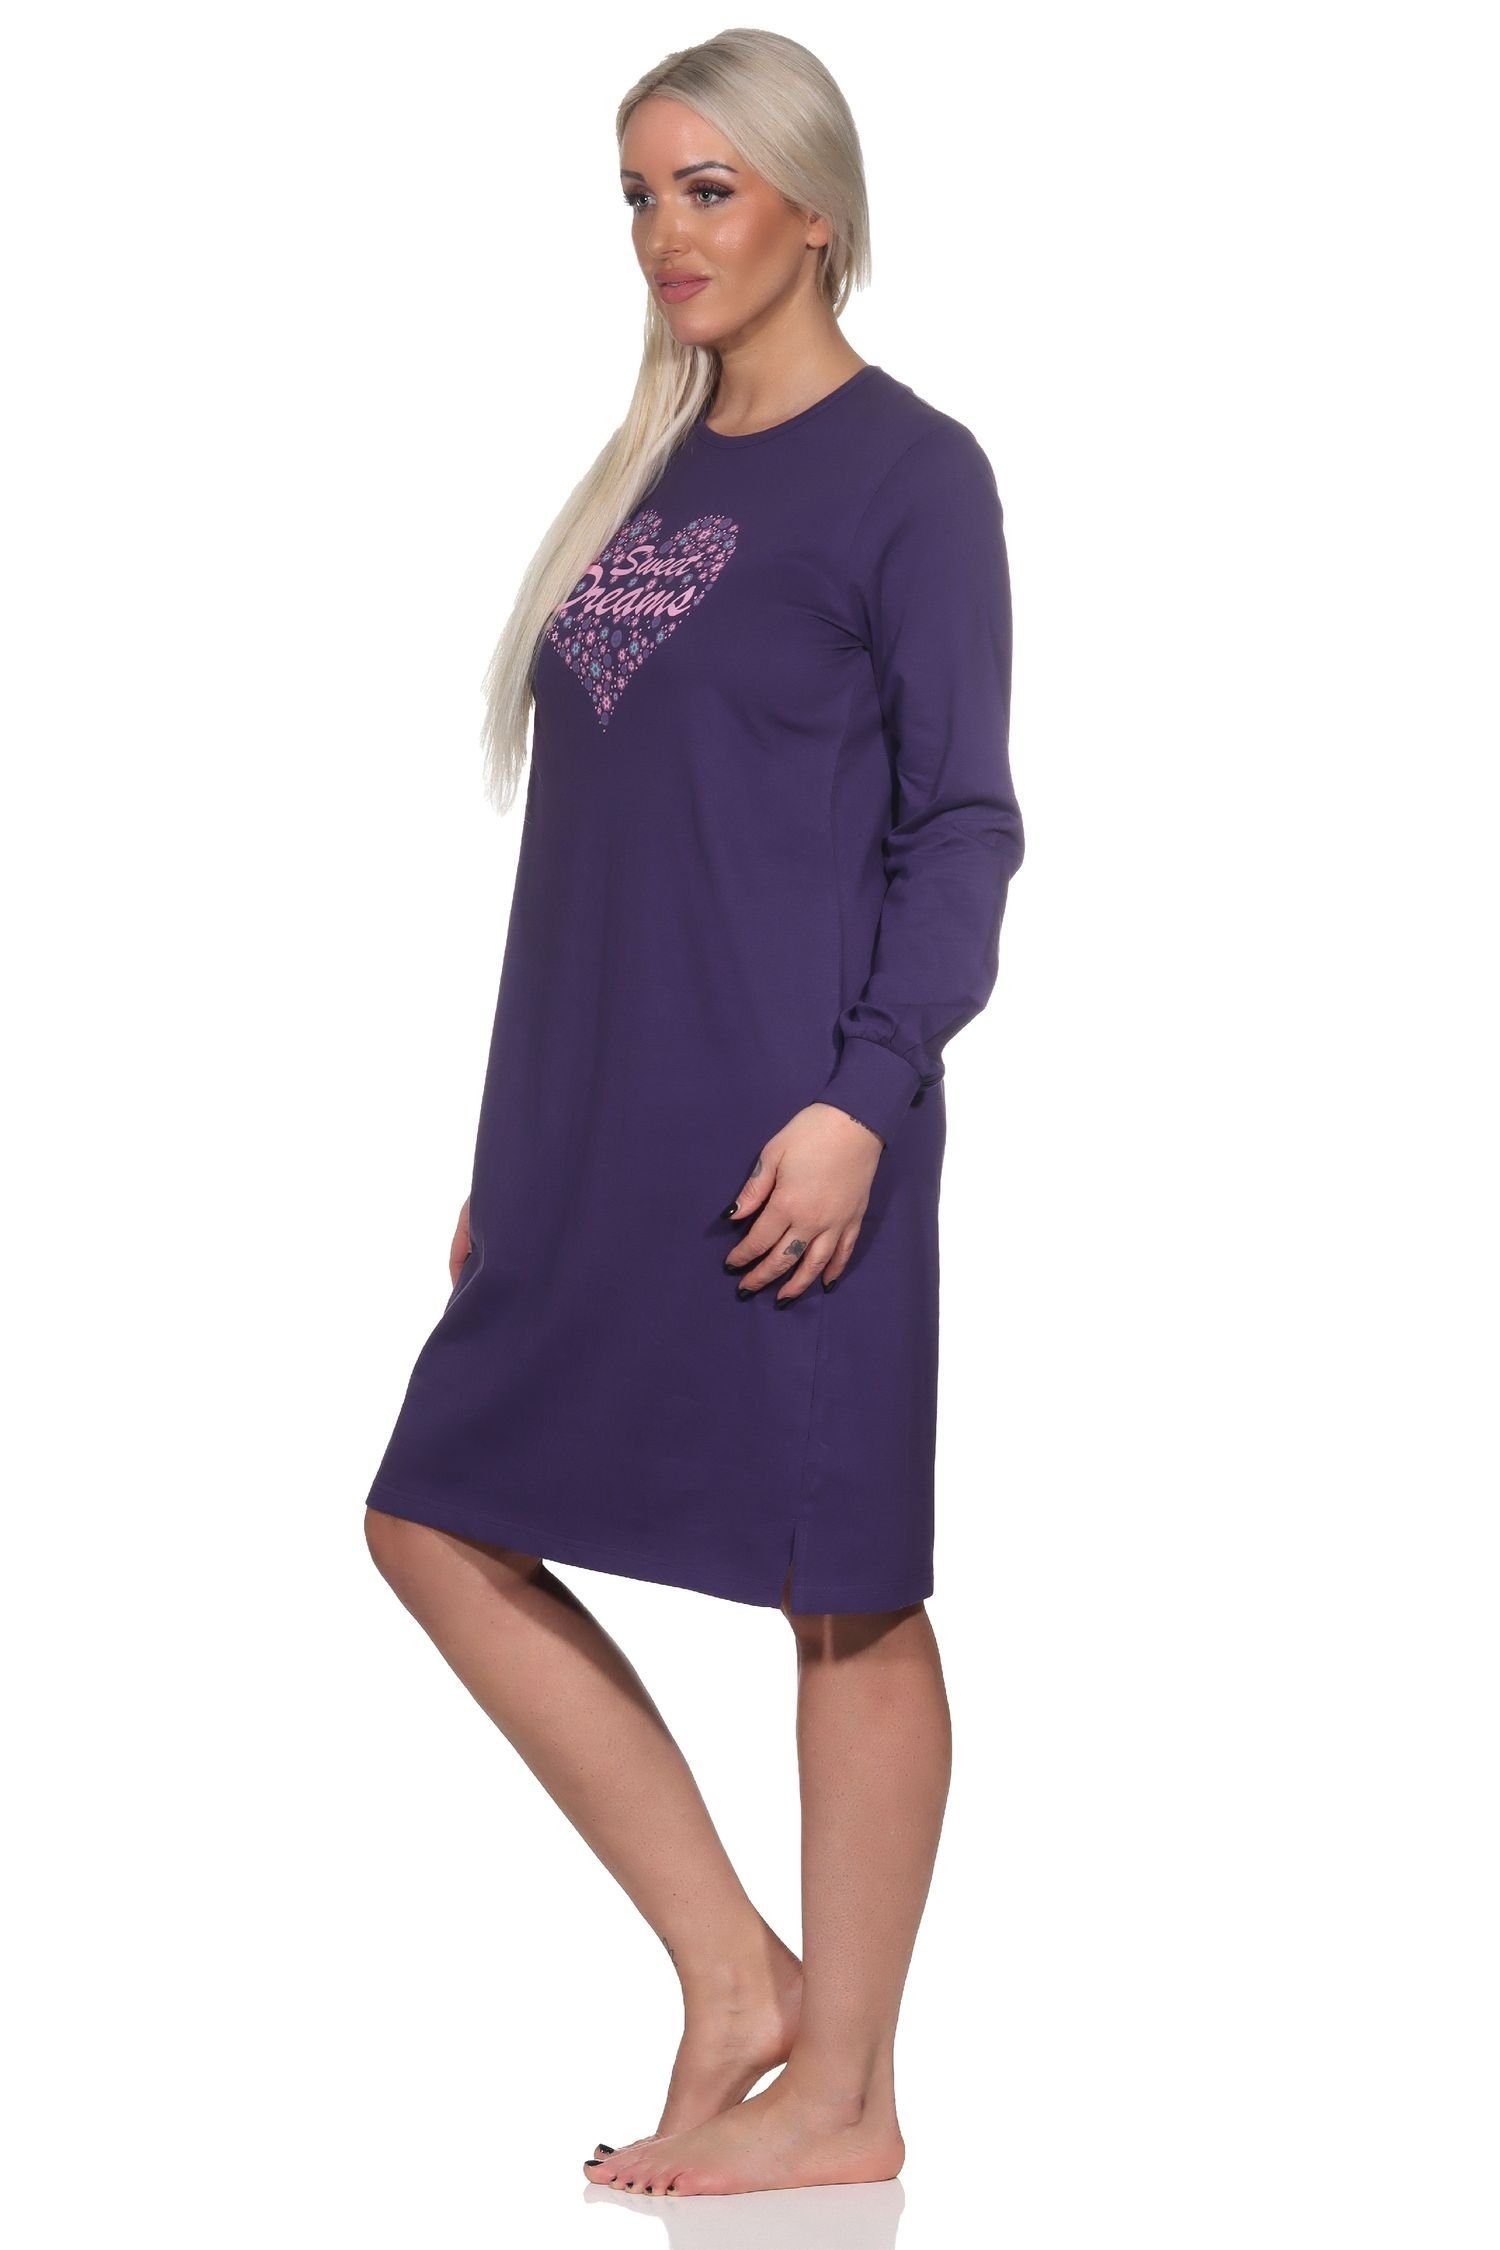 Normann Nachthemd Normann Damen mit in Nachthemd lila auch Übergrößen Herz Motiv langarm 